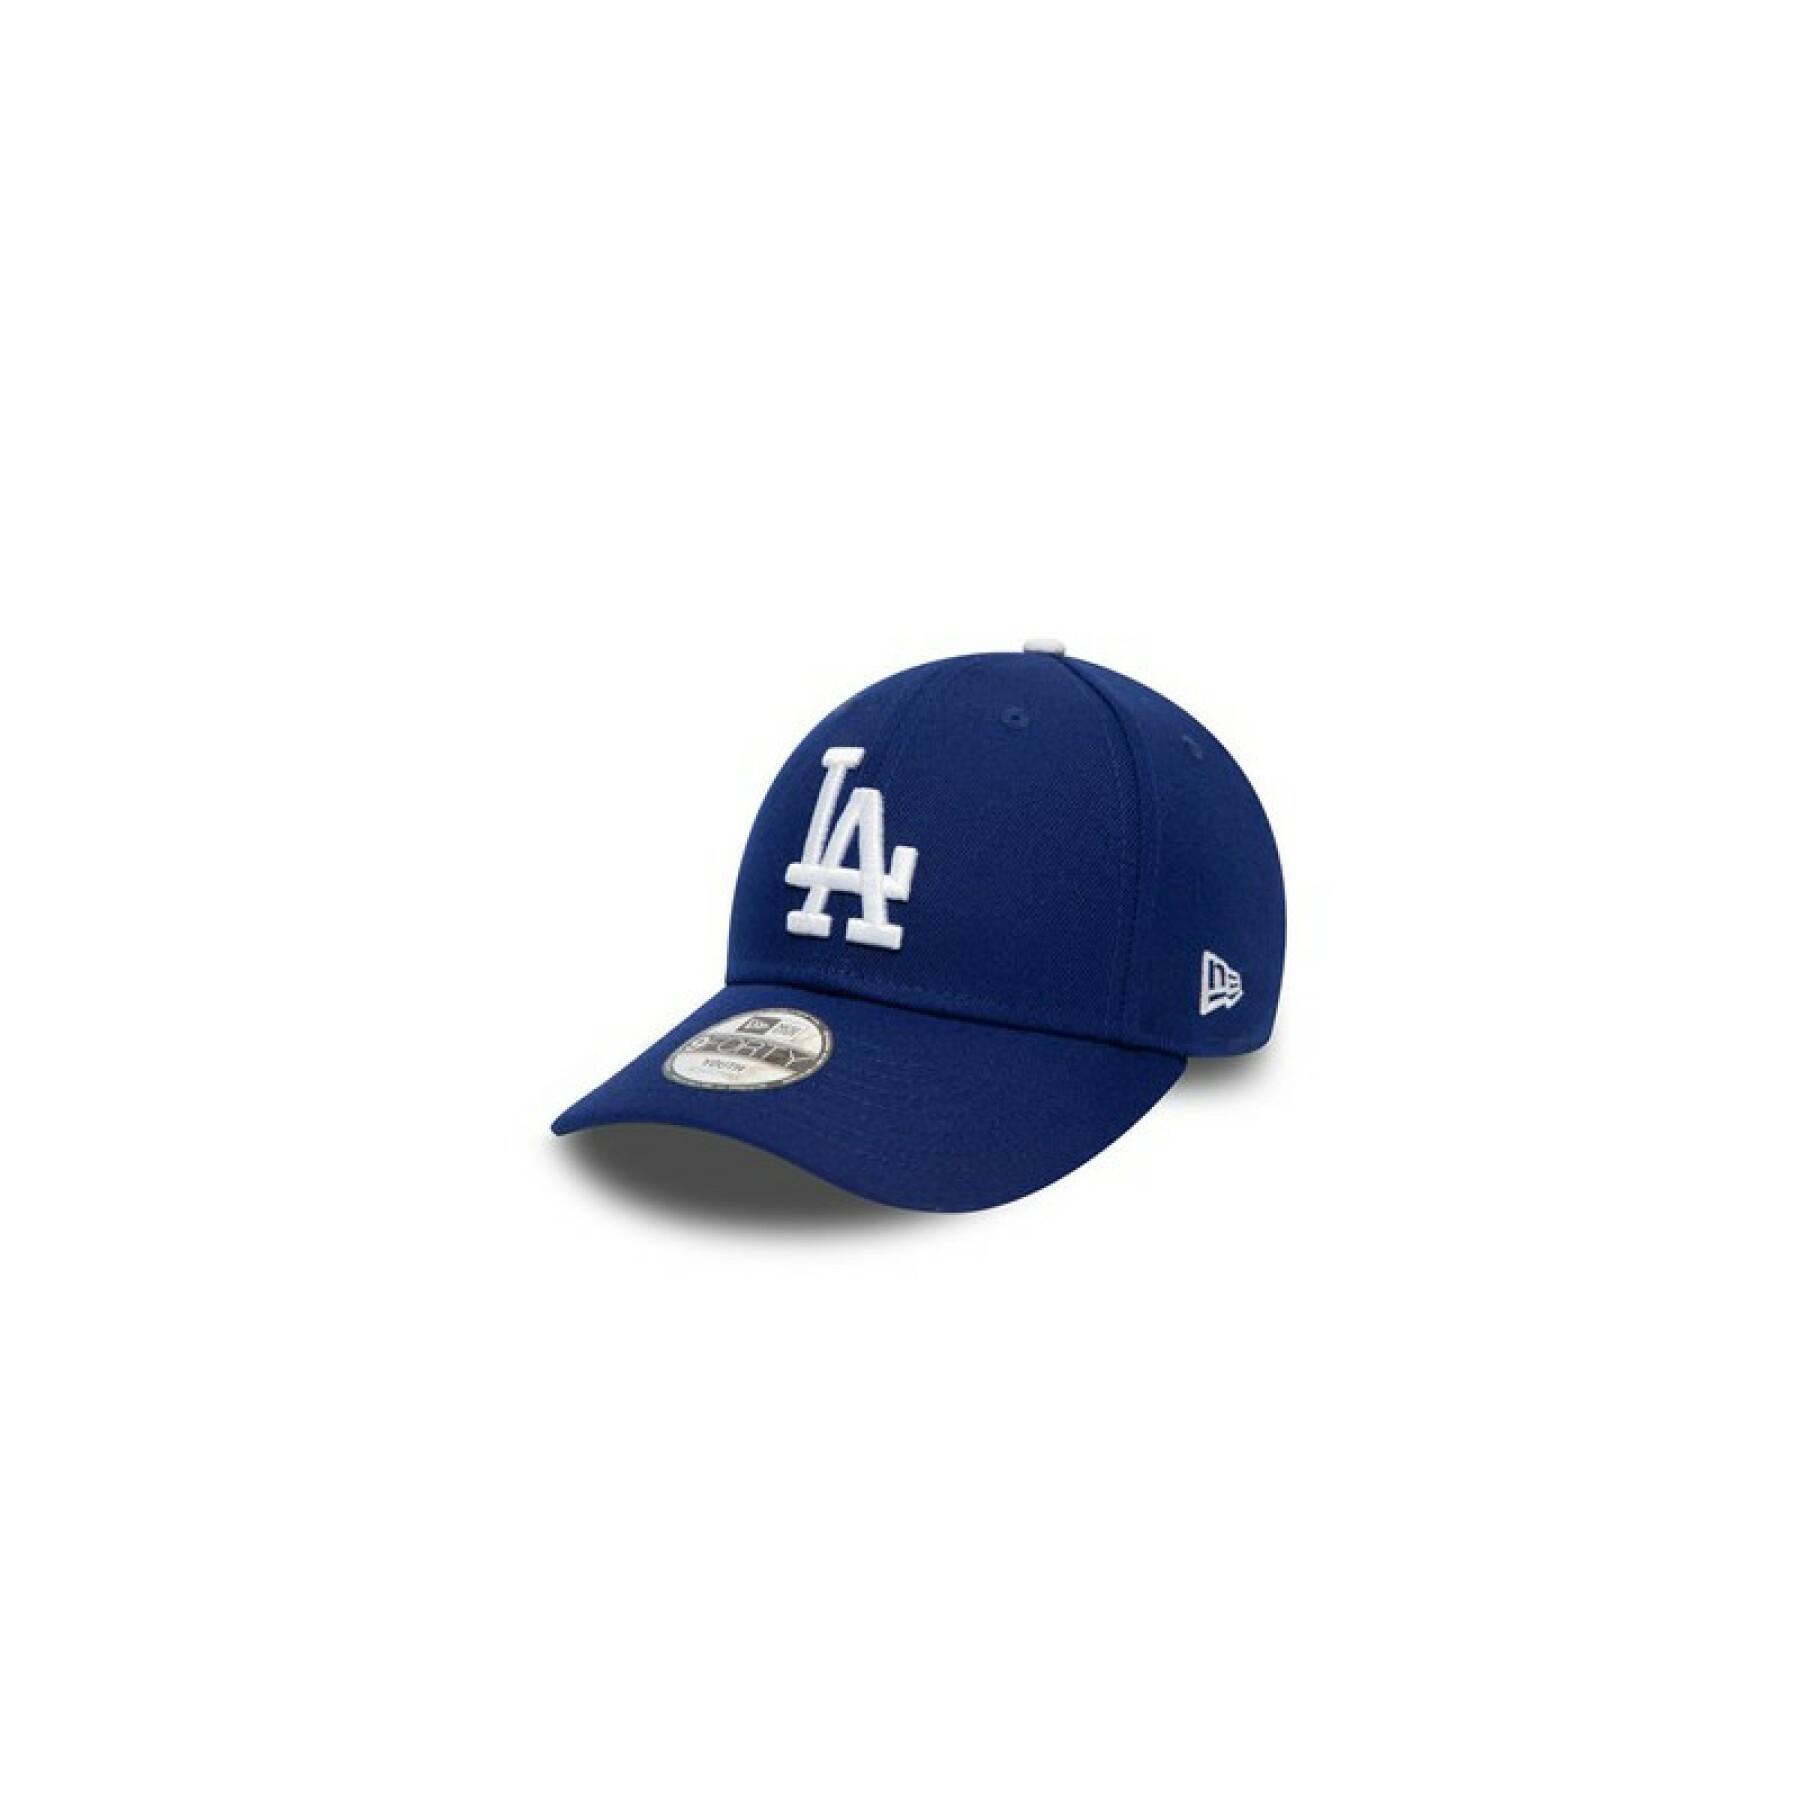 Boné 9forty criança Los Angeles Dodgers